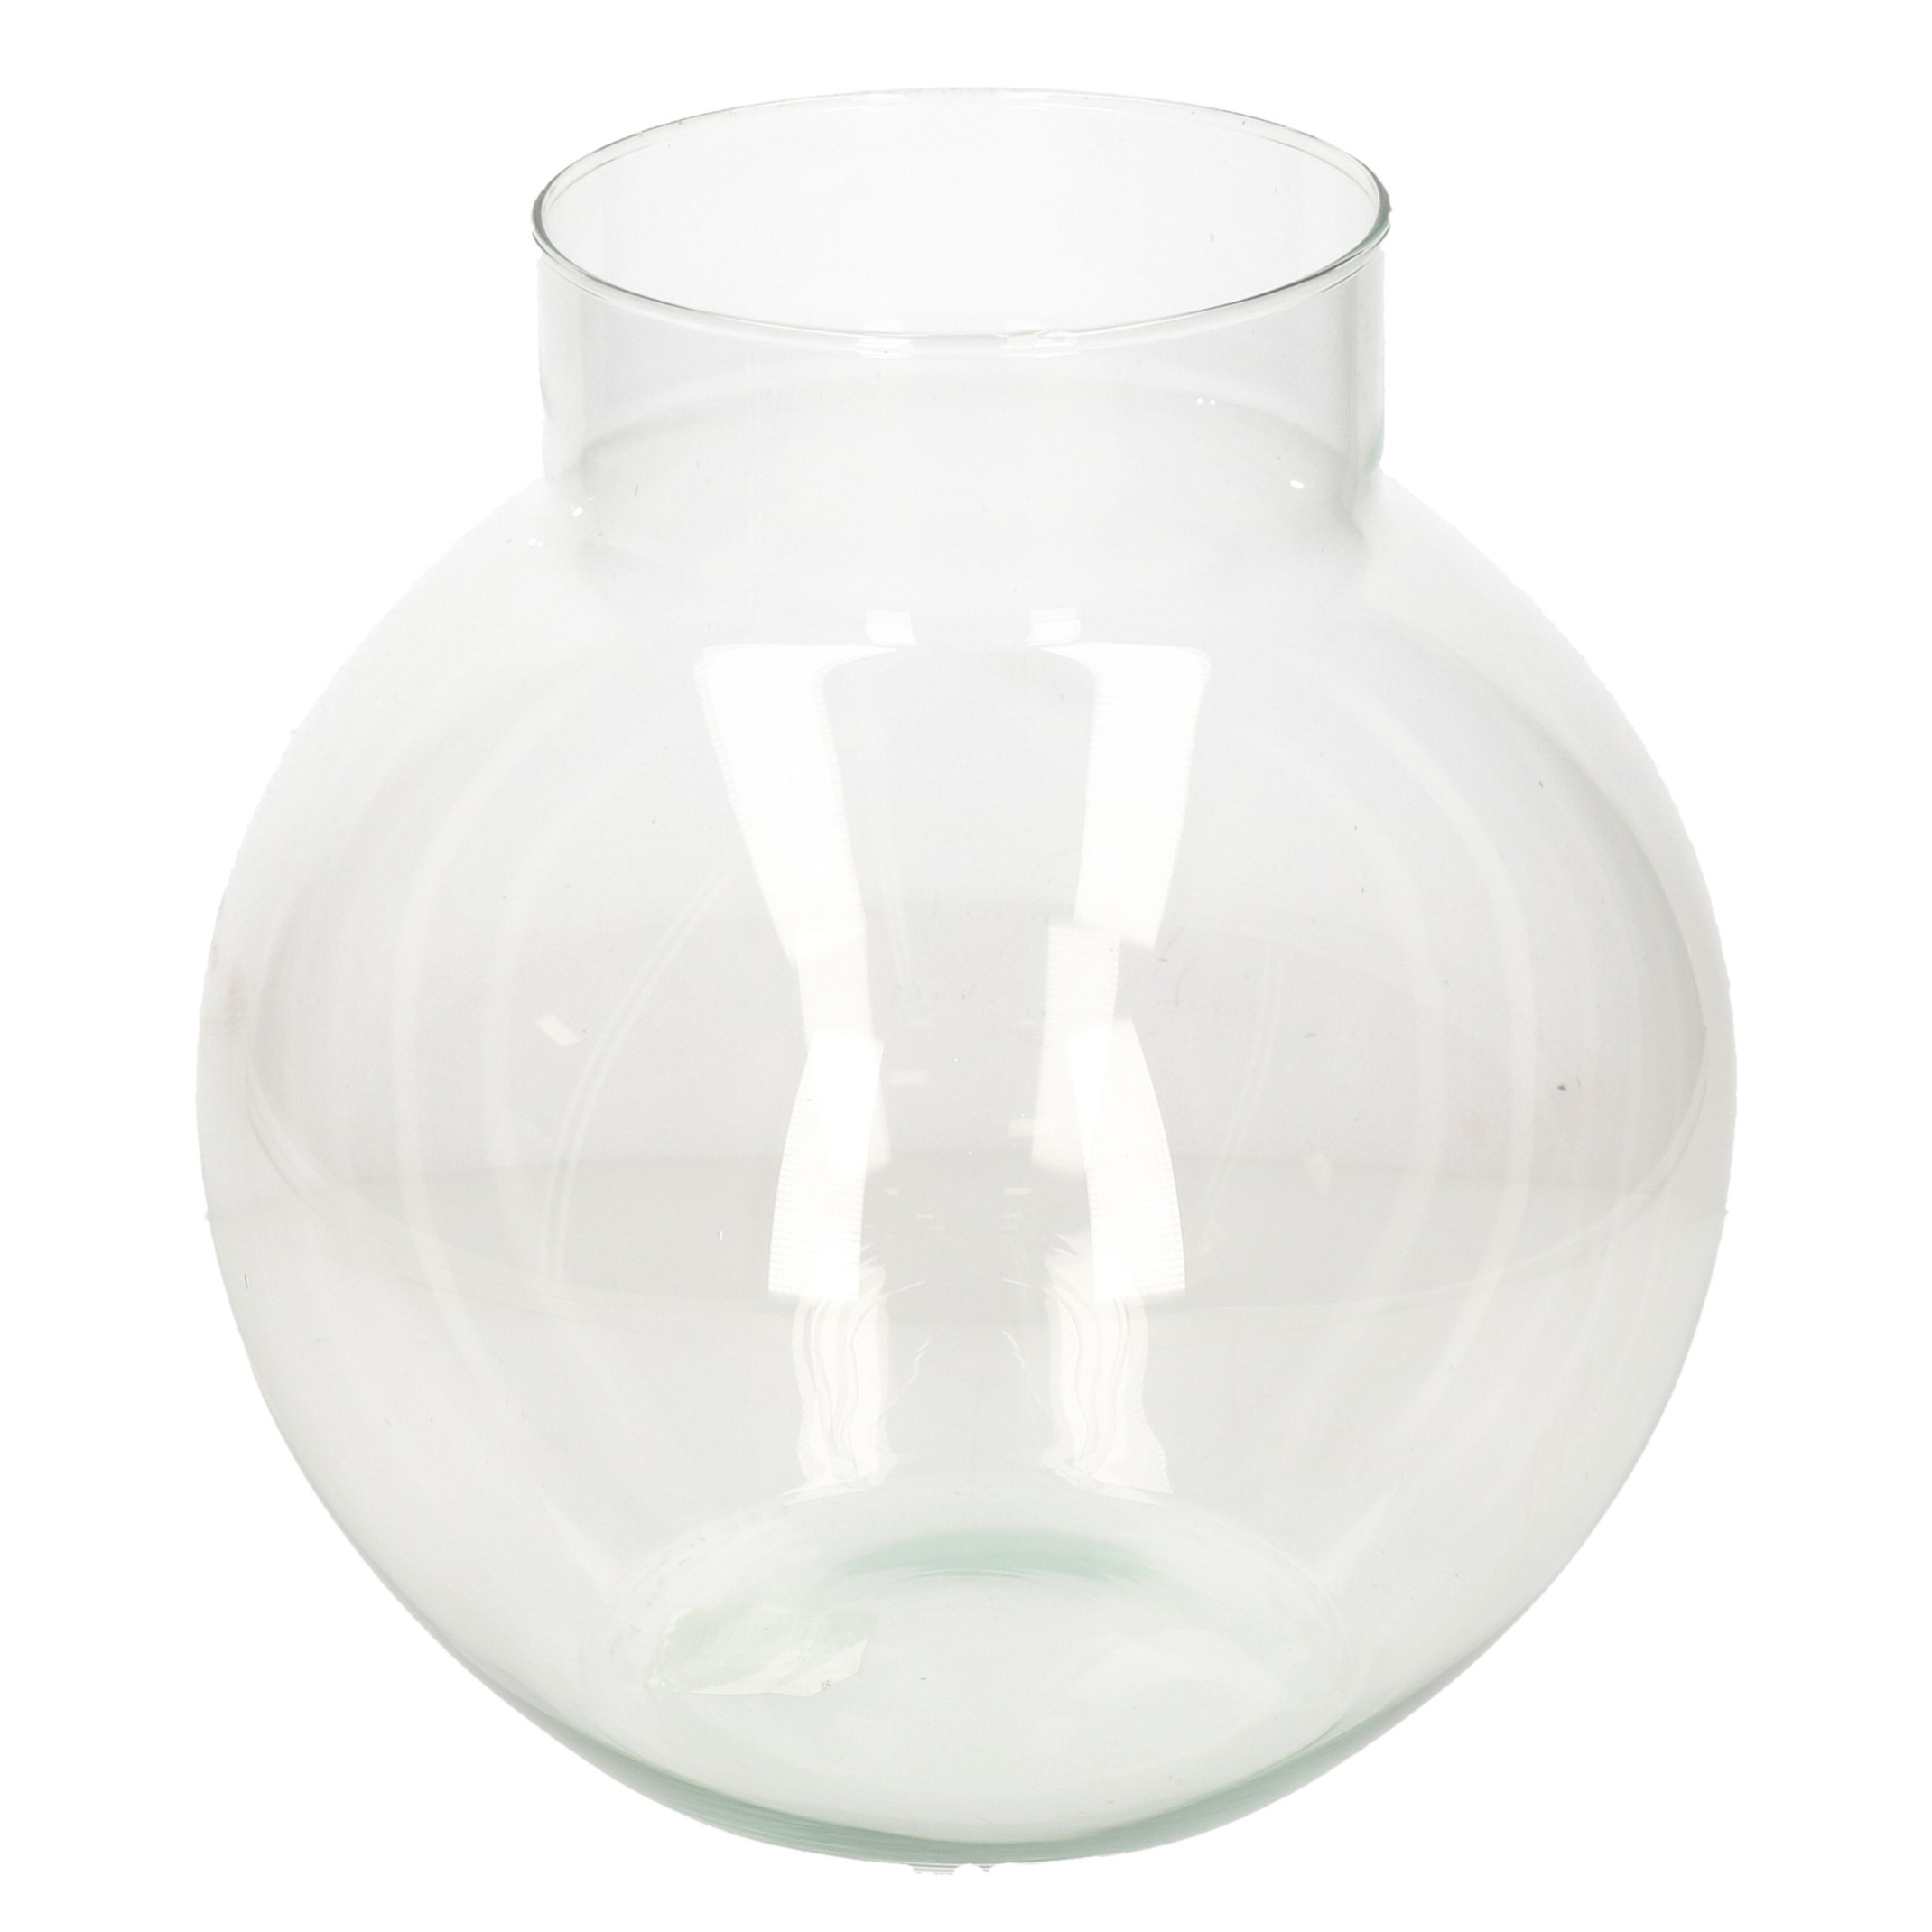 Hakbijl Glass Transparante ronde vaas/vazen van glas 23 x 23 cm -